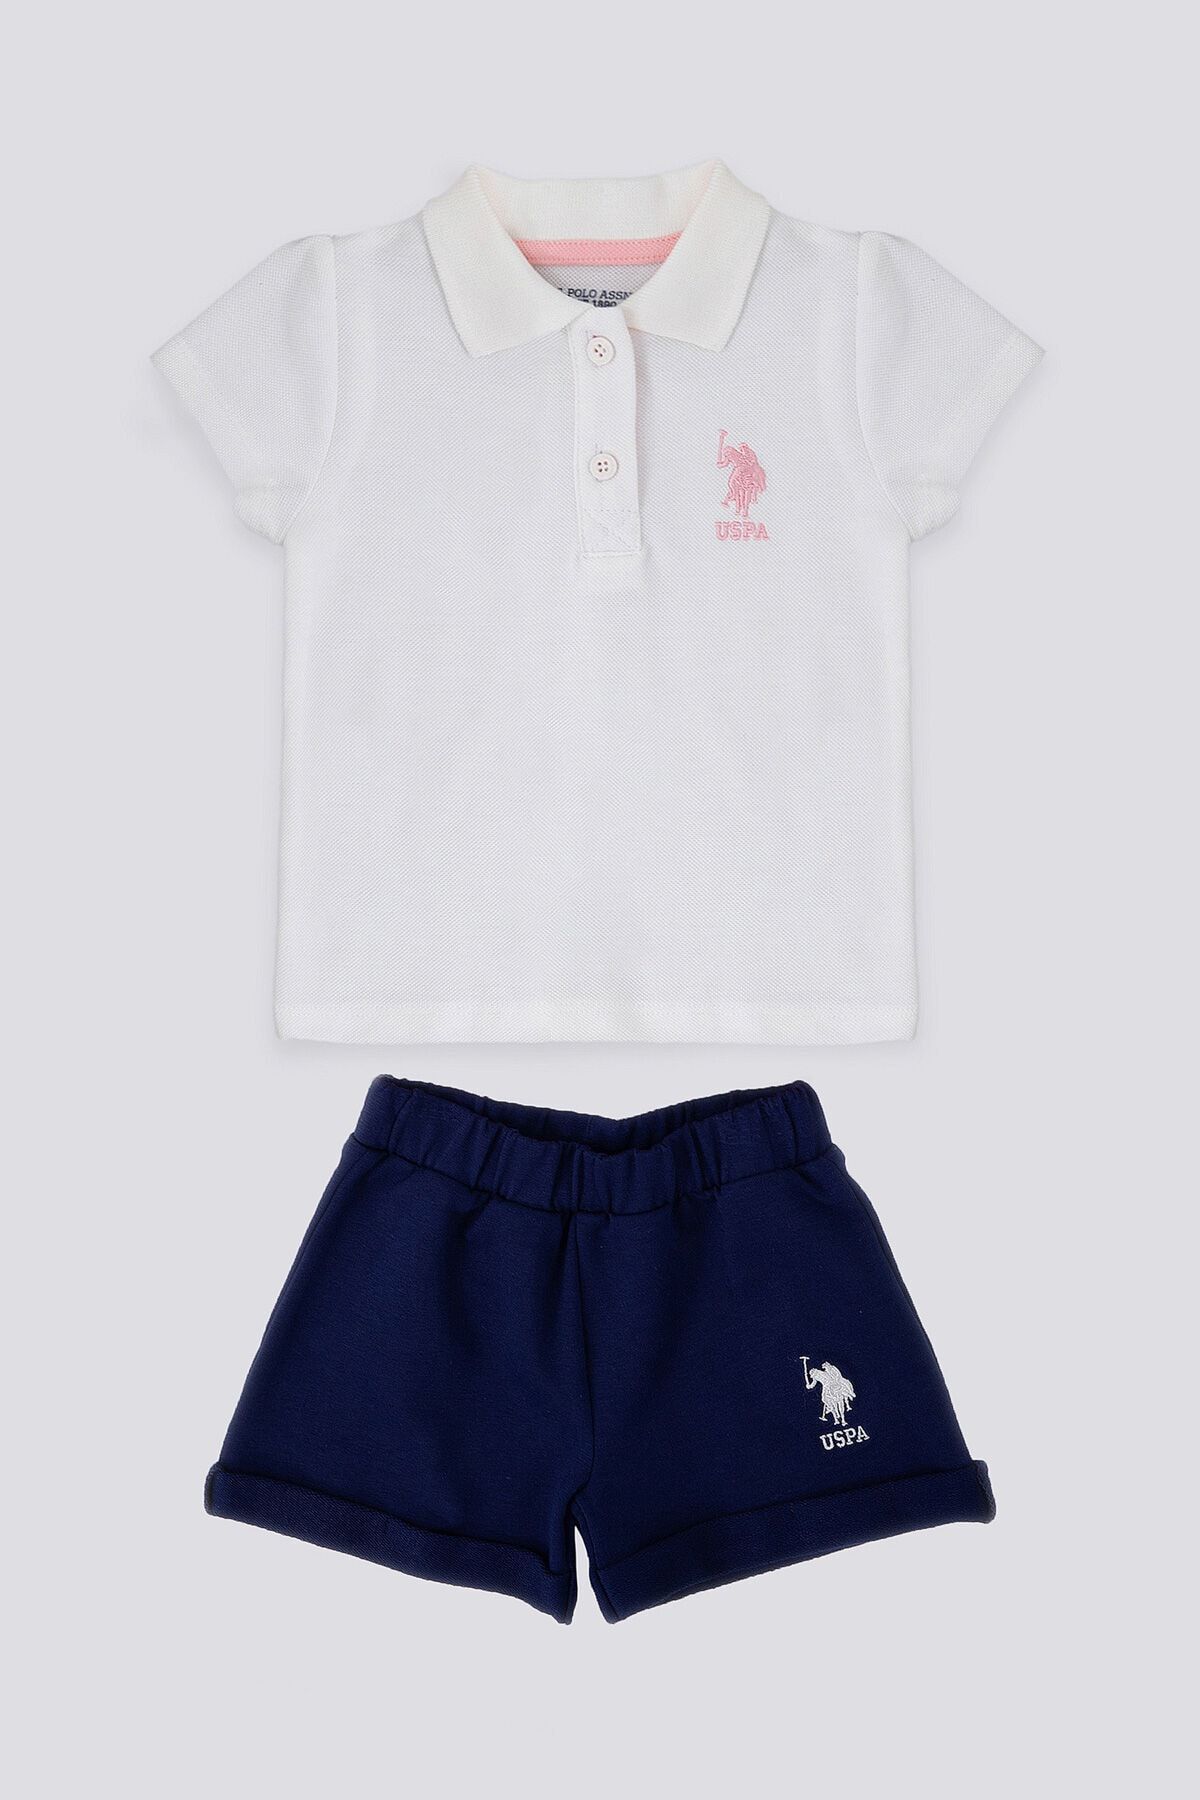 U.S. Polo Assn. Creamy Intensity Beyaz Bebek T-shirt Şort Takım